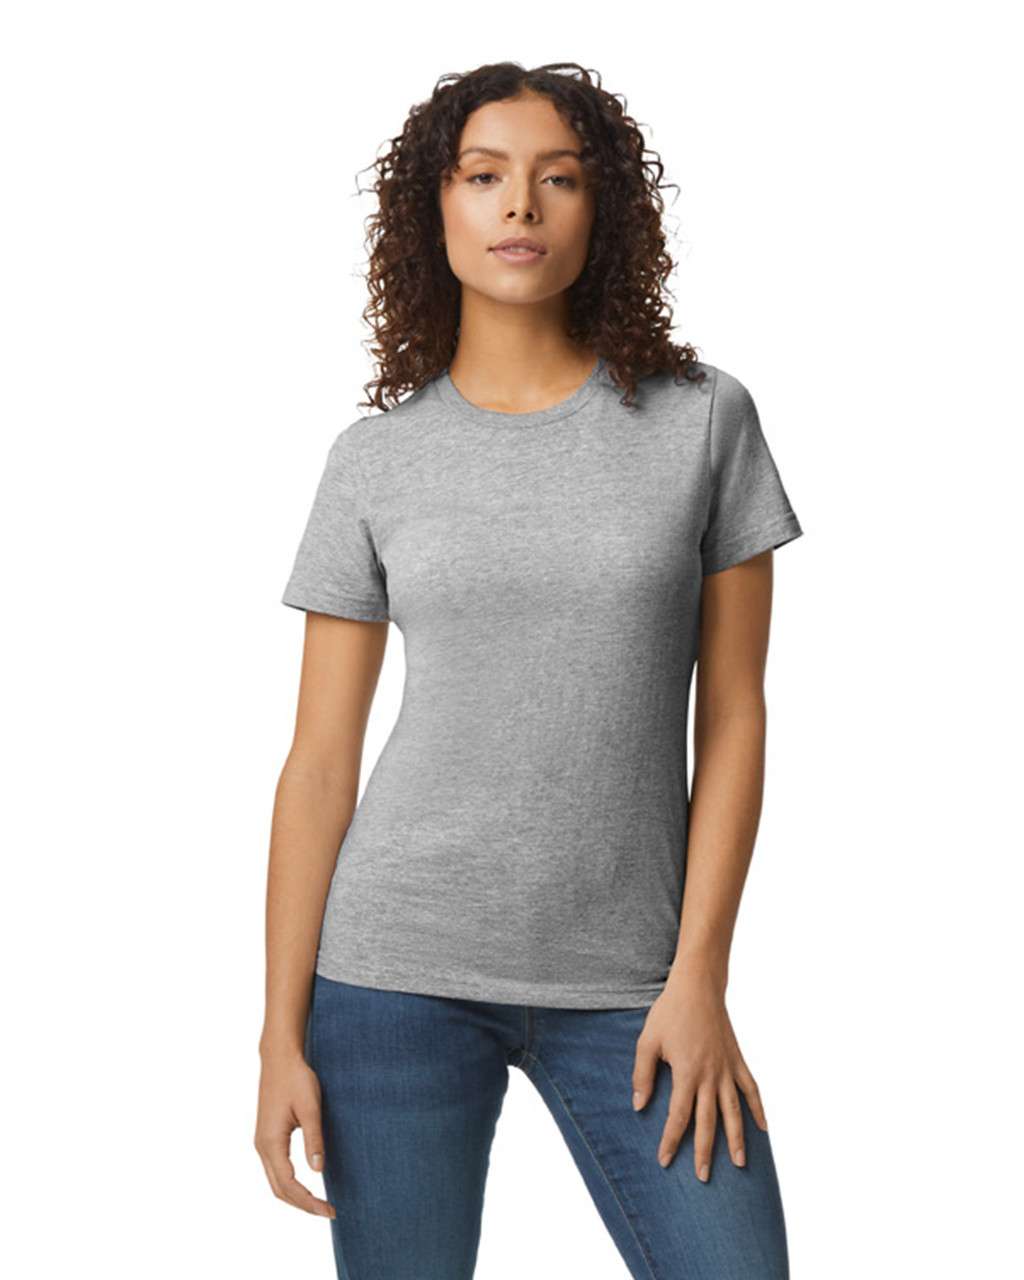 Gildan Softstyle® Midweight Women's T-shirt - grey